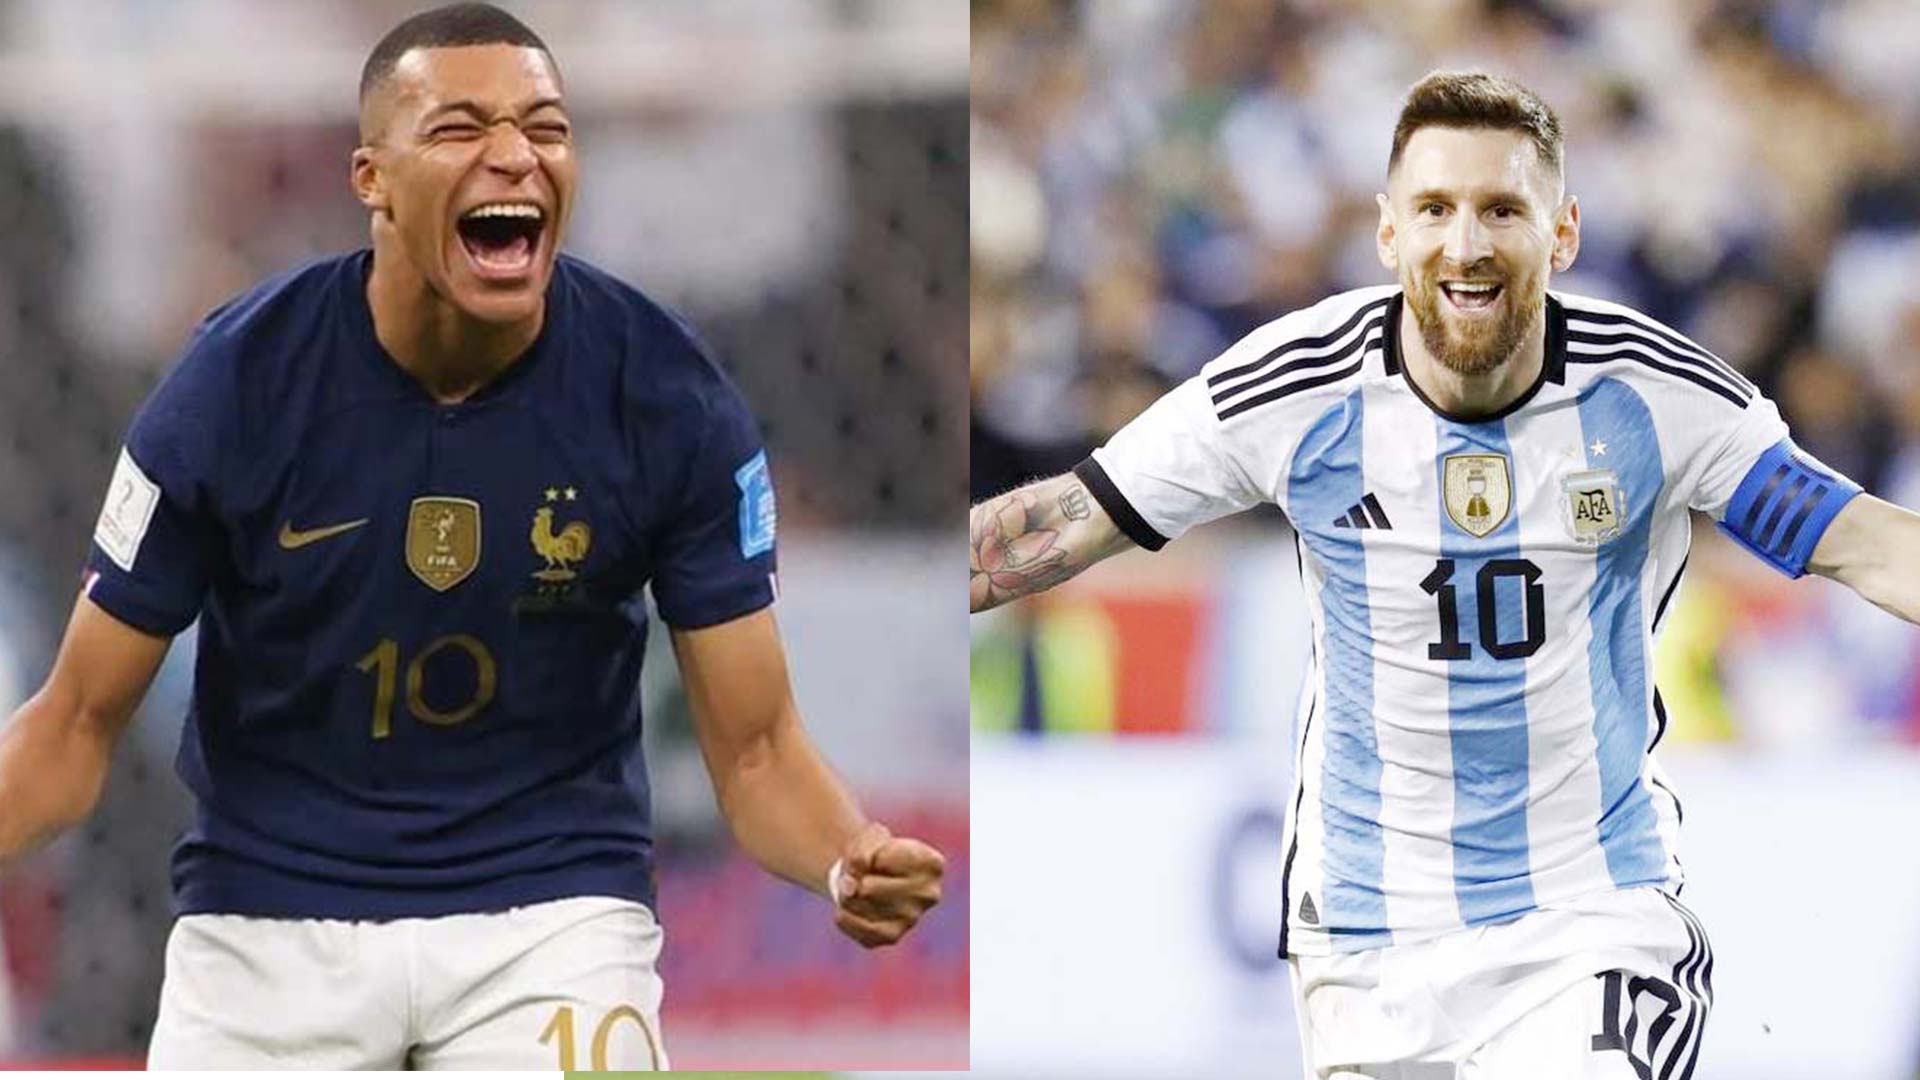 Messi đã được xem là một trong những ngôi sao sáng nhất của bóng đá thế giới cùng với Mbappe. Hai siêu sao này đã có một sự thể hiện ngoạn mục trên sân cỏ và mang lại nhiều niềm vui cho người hâm mộ. Hãy xem những hình ảnh ấn tượng của các ngôi sao này trên sân cỏ.